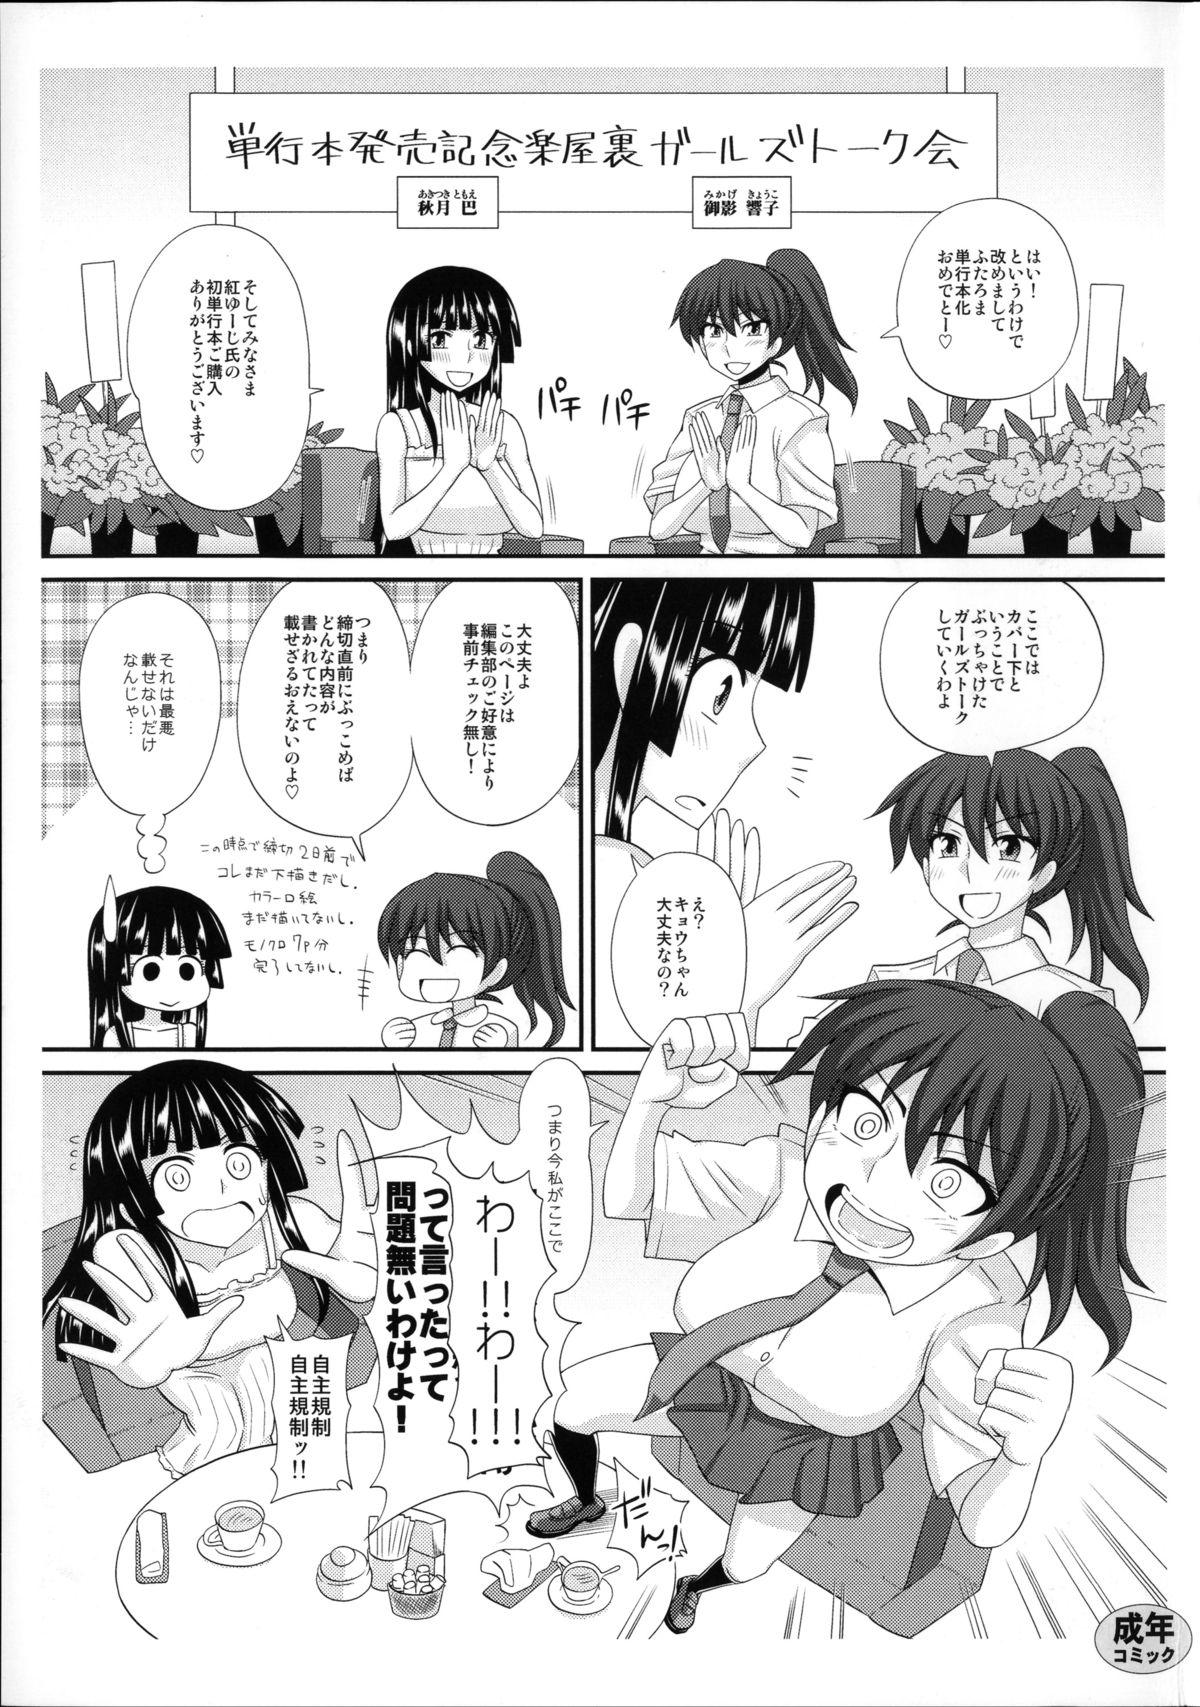 Masturbacion FutaRoma - Futanari Roshutsu Mania Magrinha - Page 8